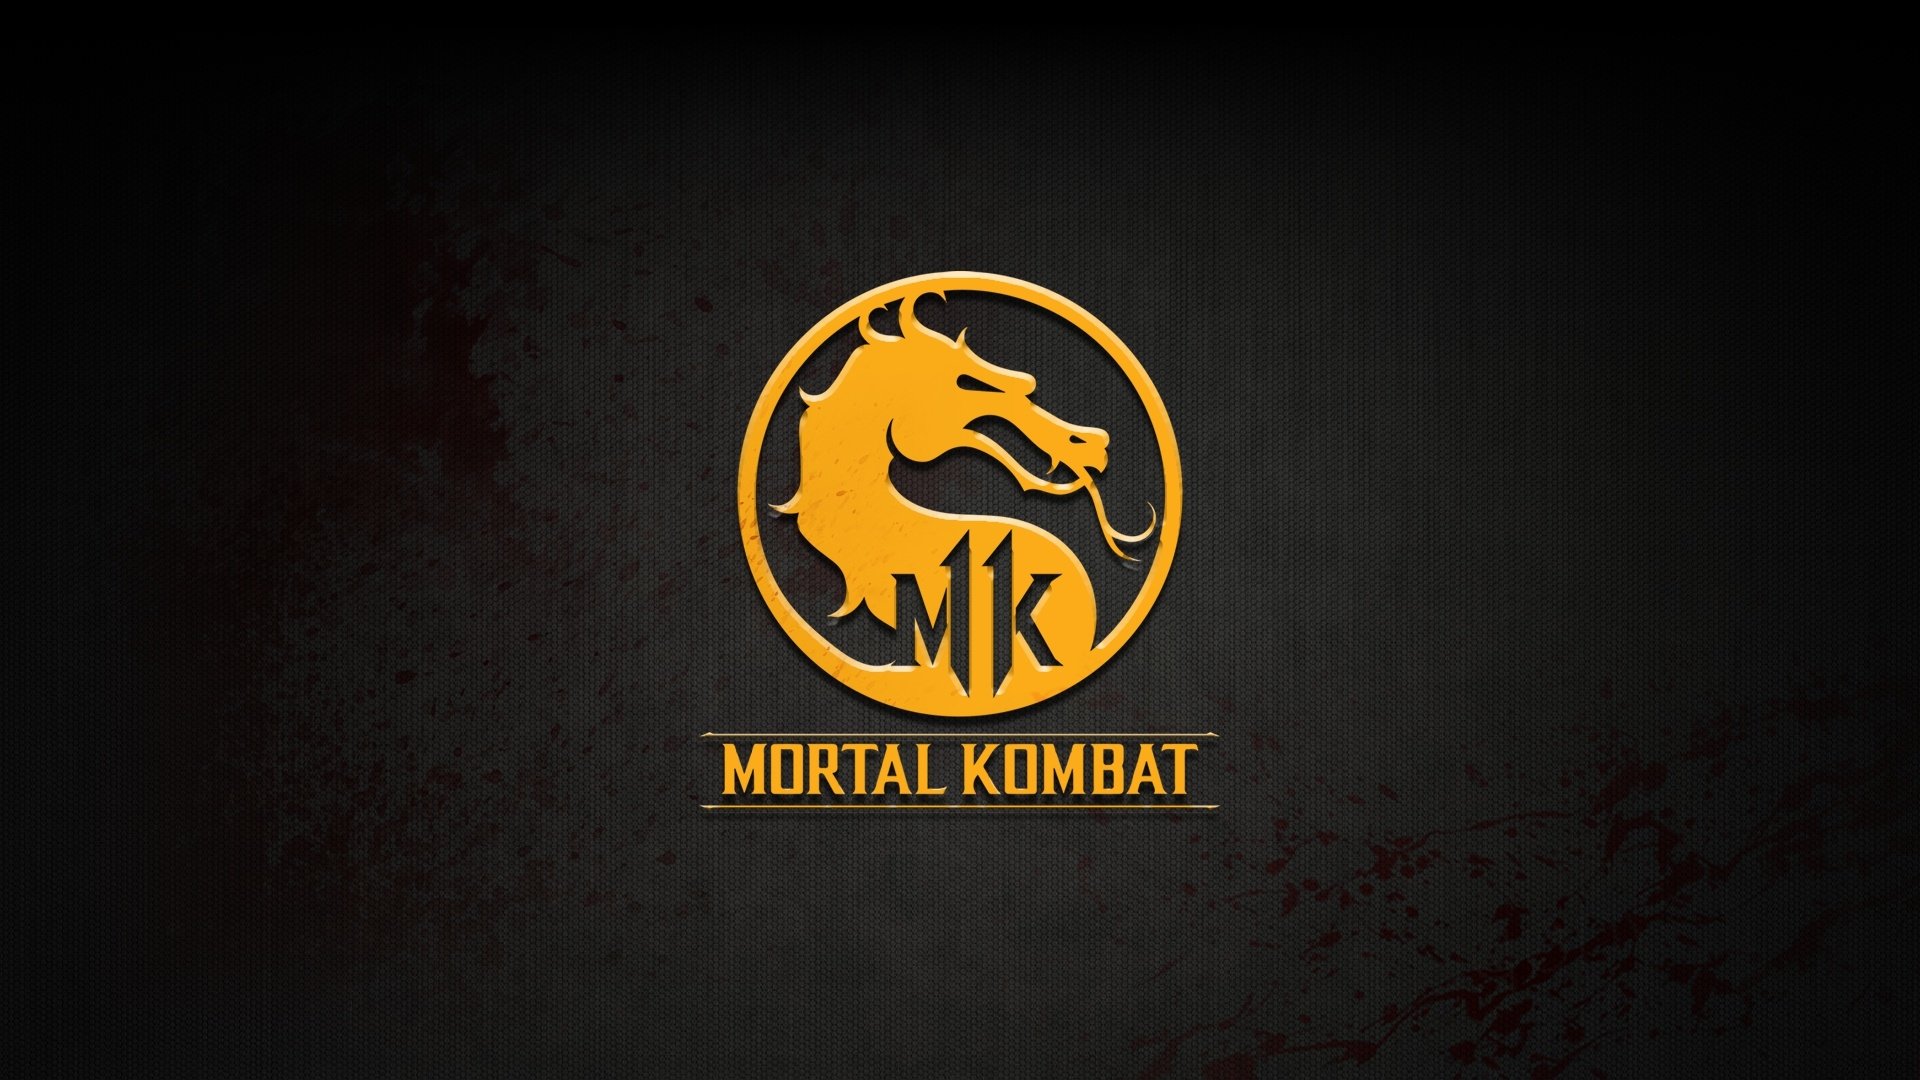 تجربه رایگان Mortal Kombat 11 تا نهم مارس امکان پذیر خواهد بود.